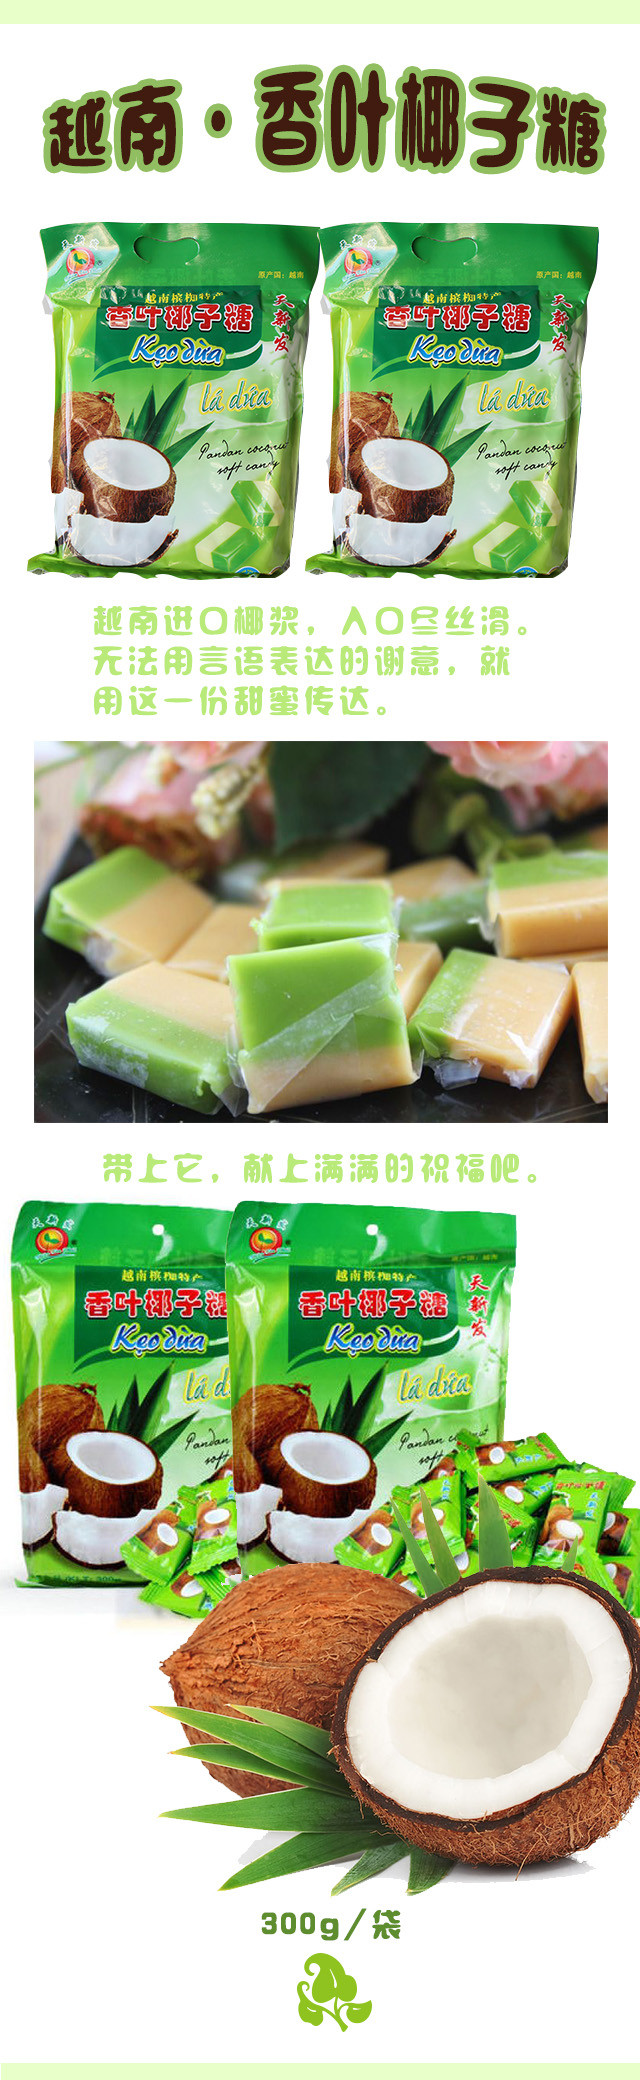 越南天新发香叶椰子糖300g/包